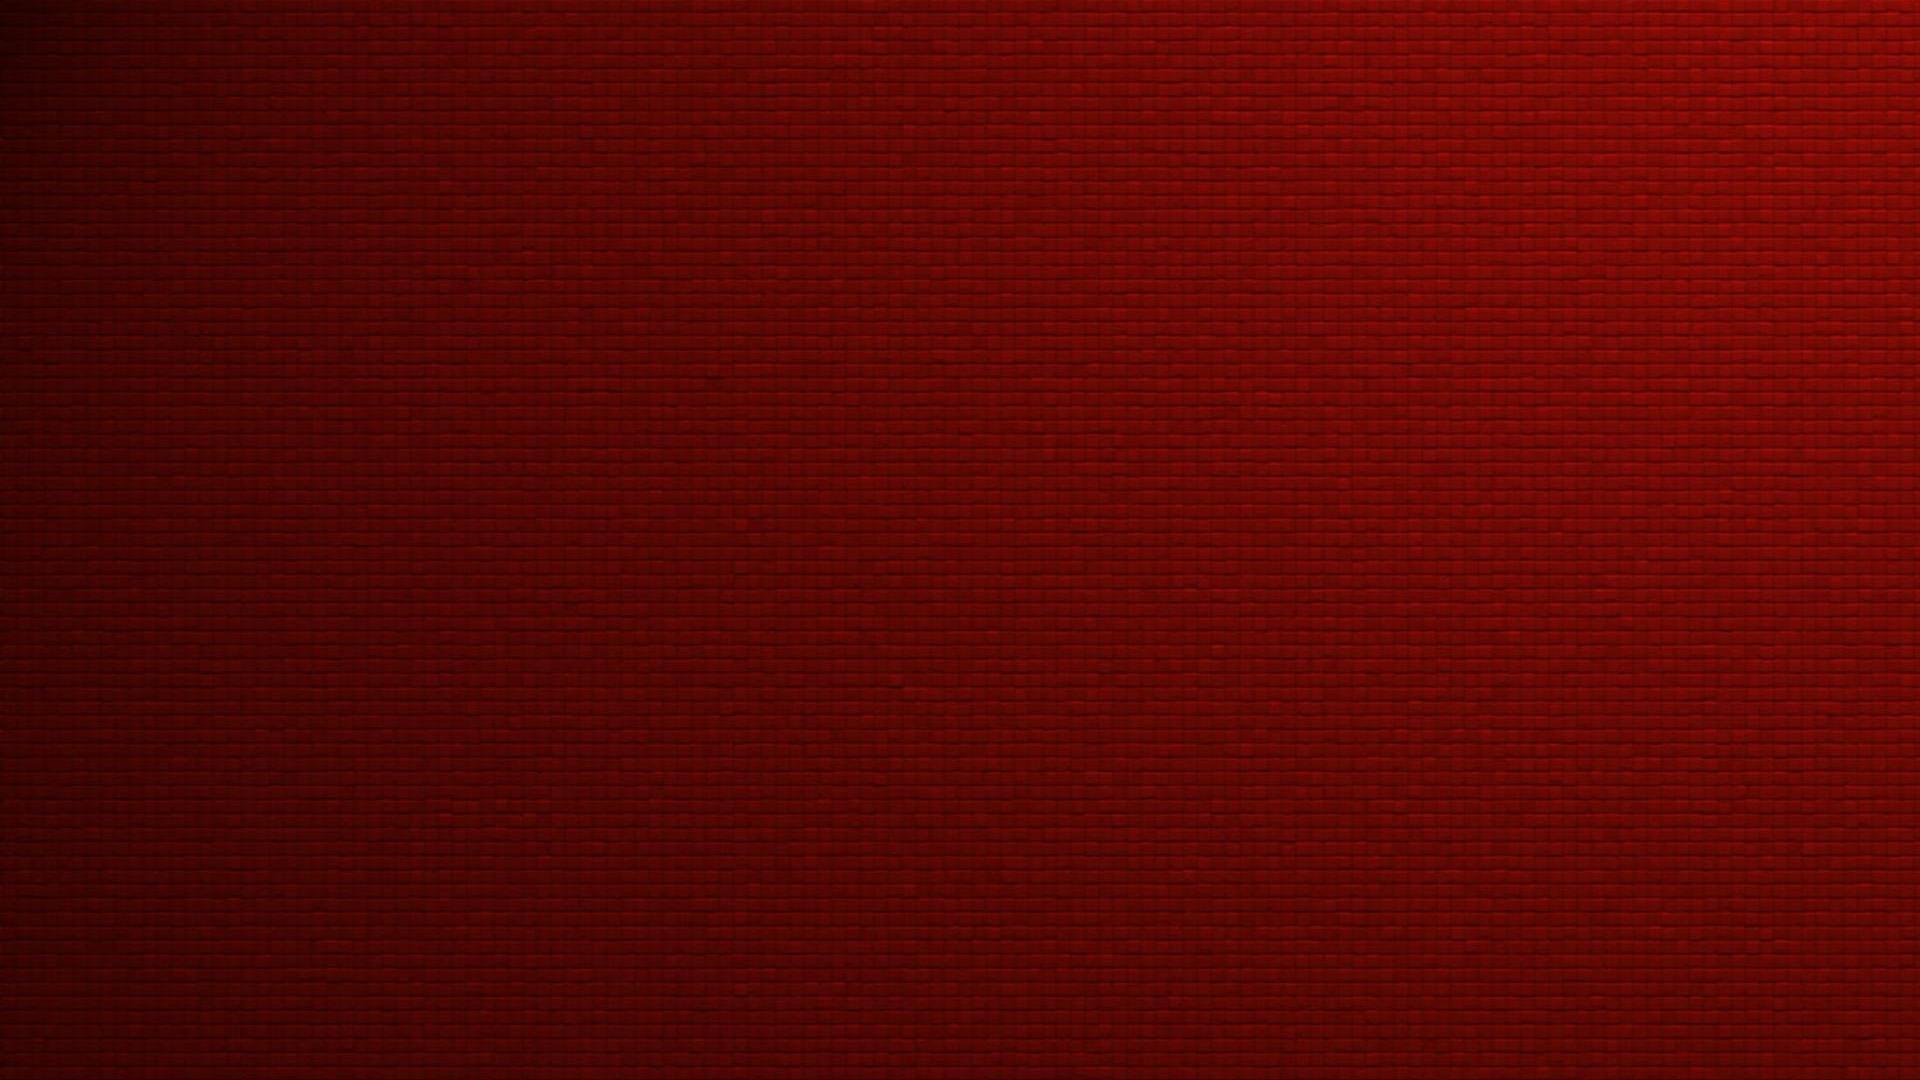 Crisp Red Wallpaper For Desktop, Laptop and Tablet Devices